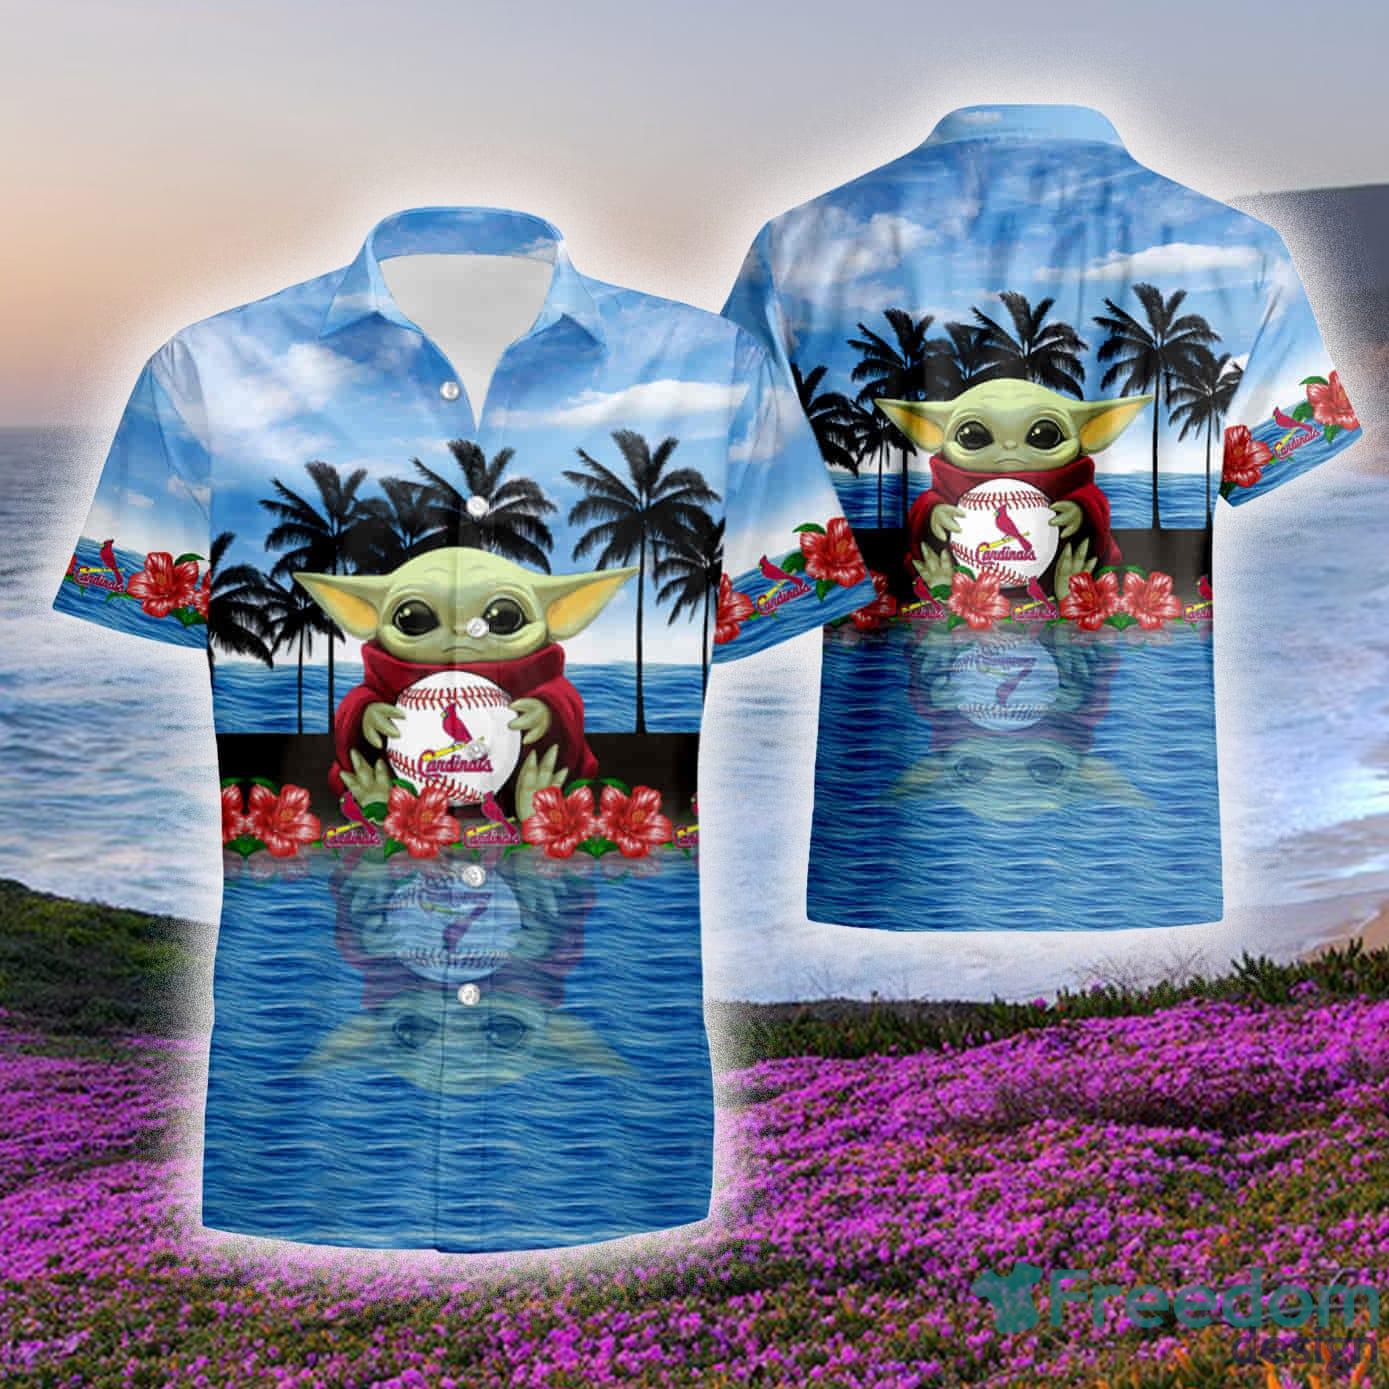 St. Louis Cardinals MLB Flower Hawaiian Shirt Gift For Men Women Fans -  Freedomdesign